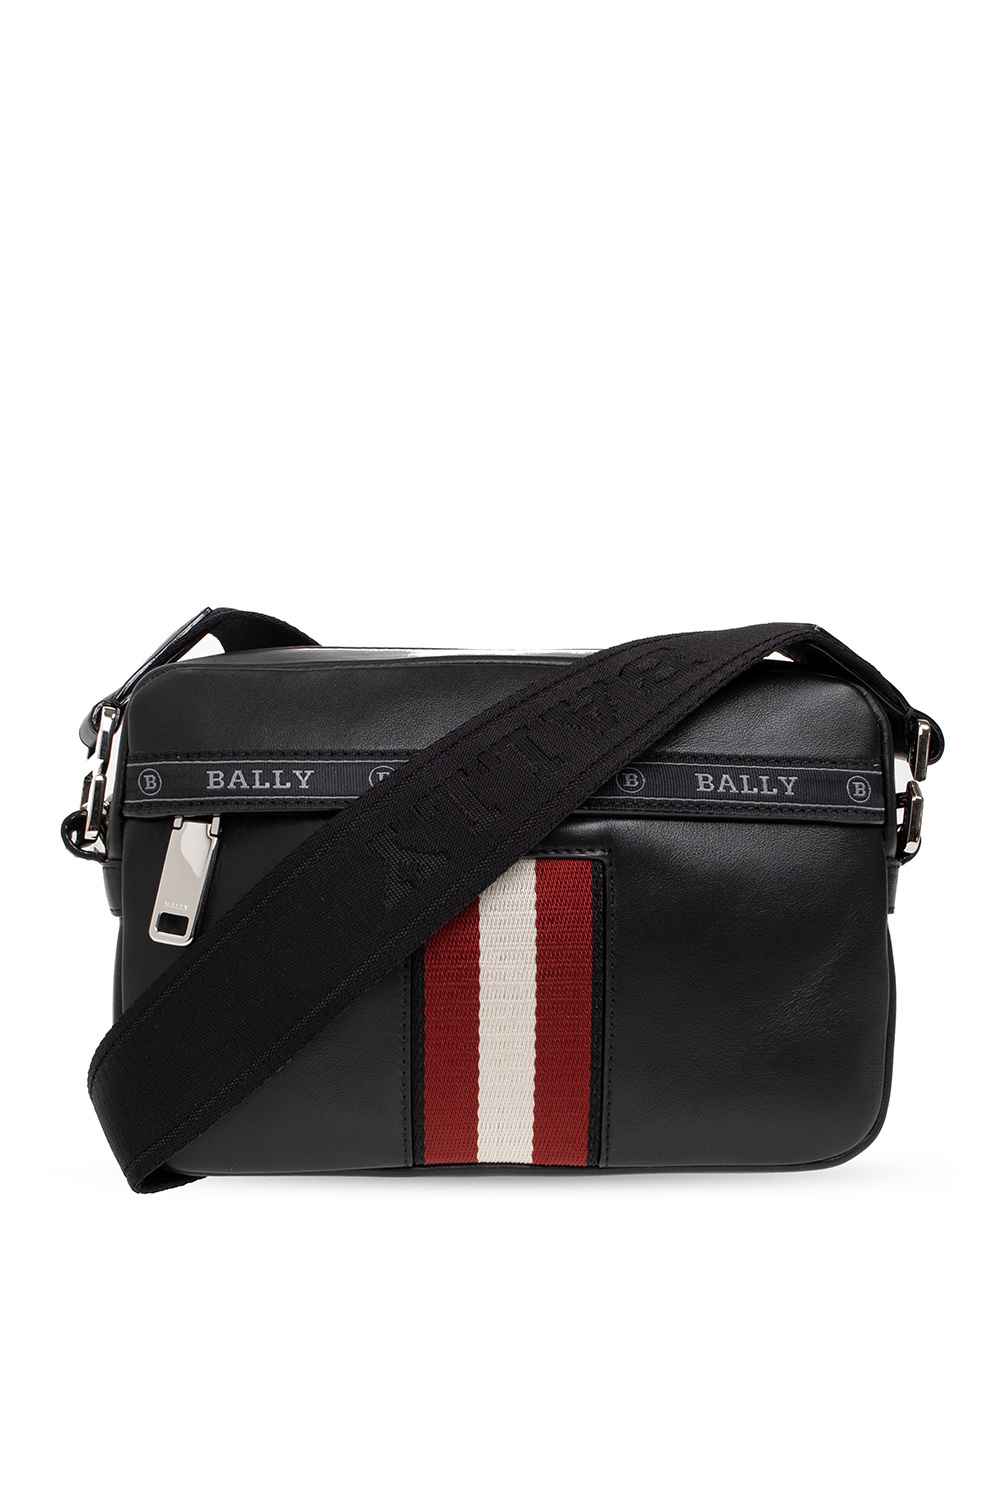 Bally ‘Hal’ shoulder bag